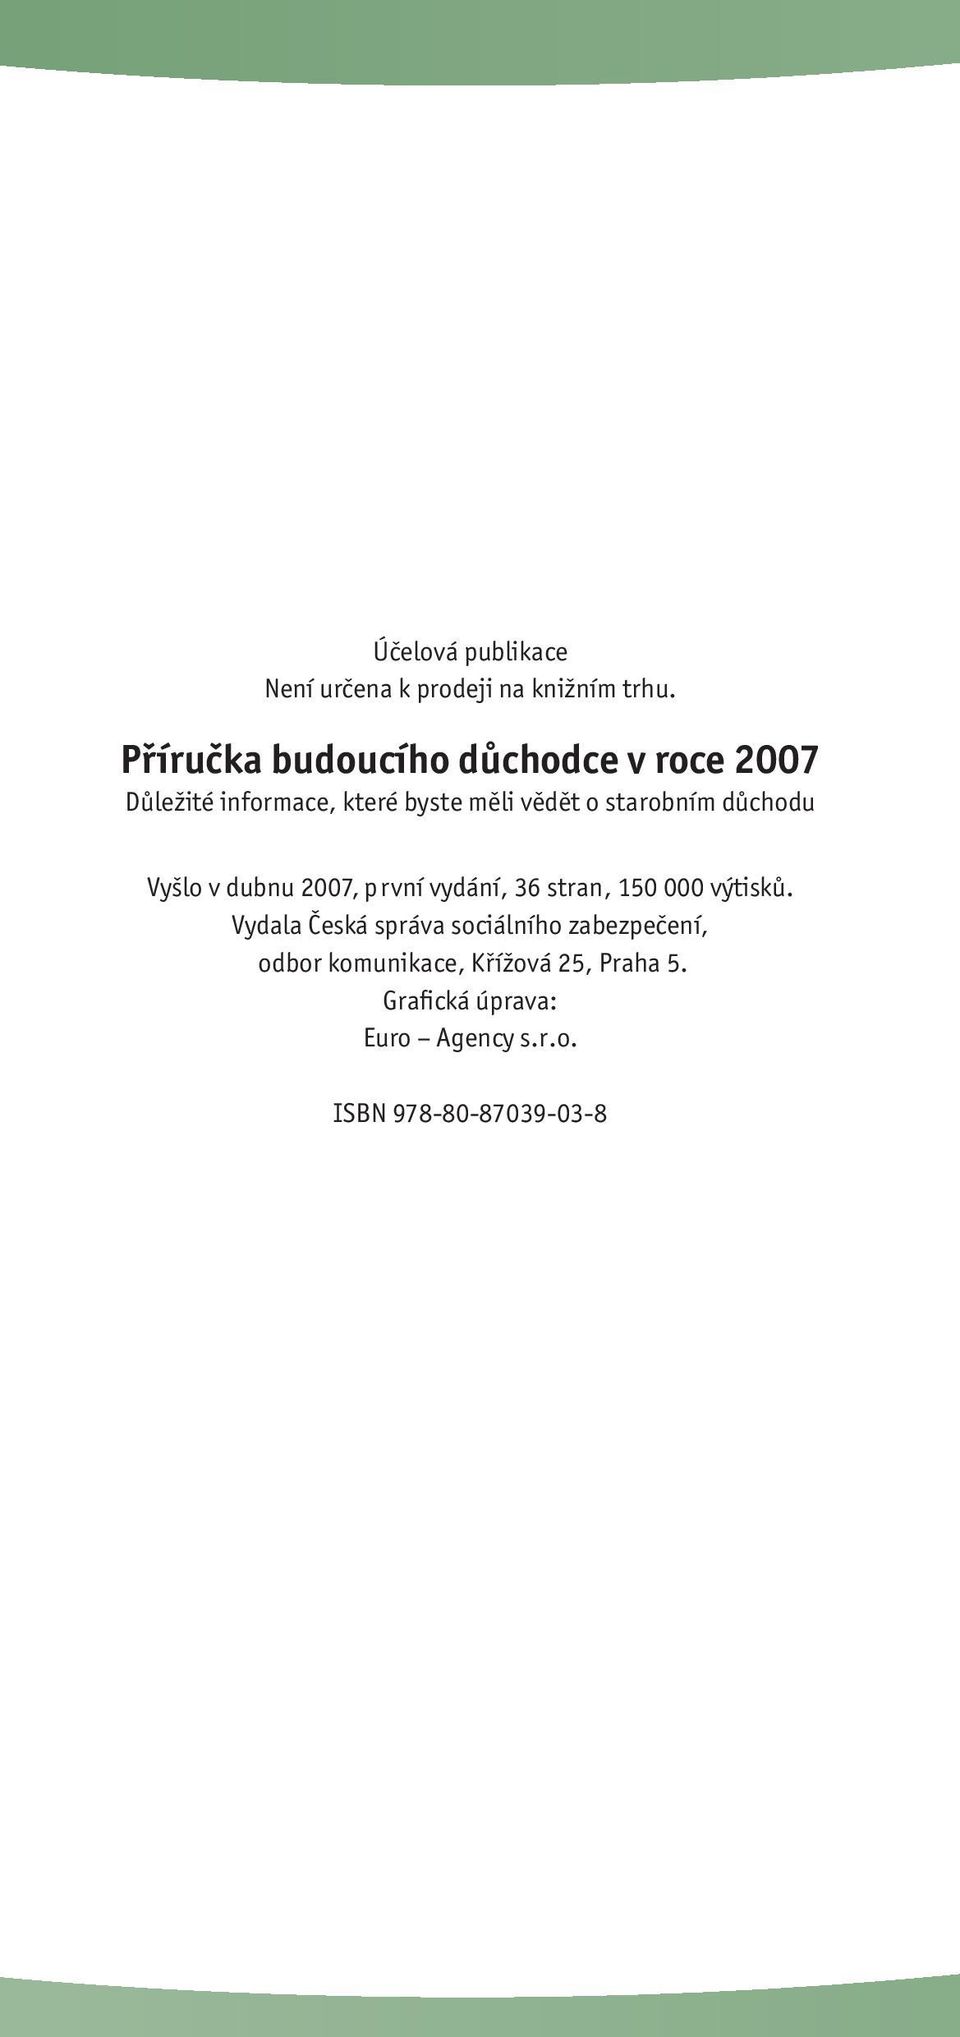 starobním důchodu Vyšlo v dubnu 2007, první vydání, 36 stran, 150 000 výtisků.